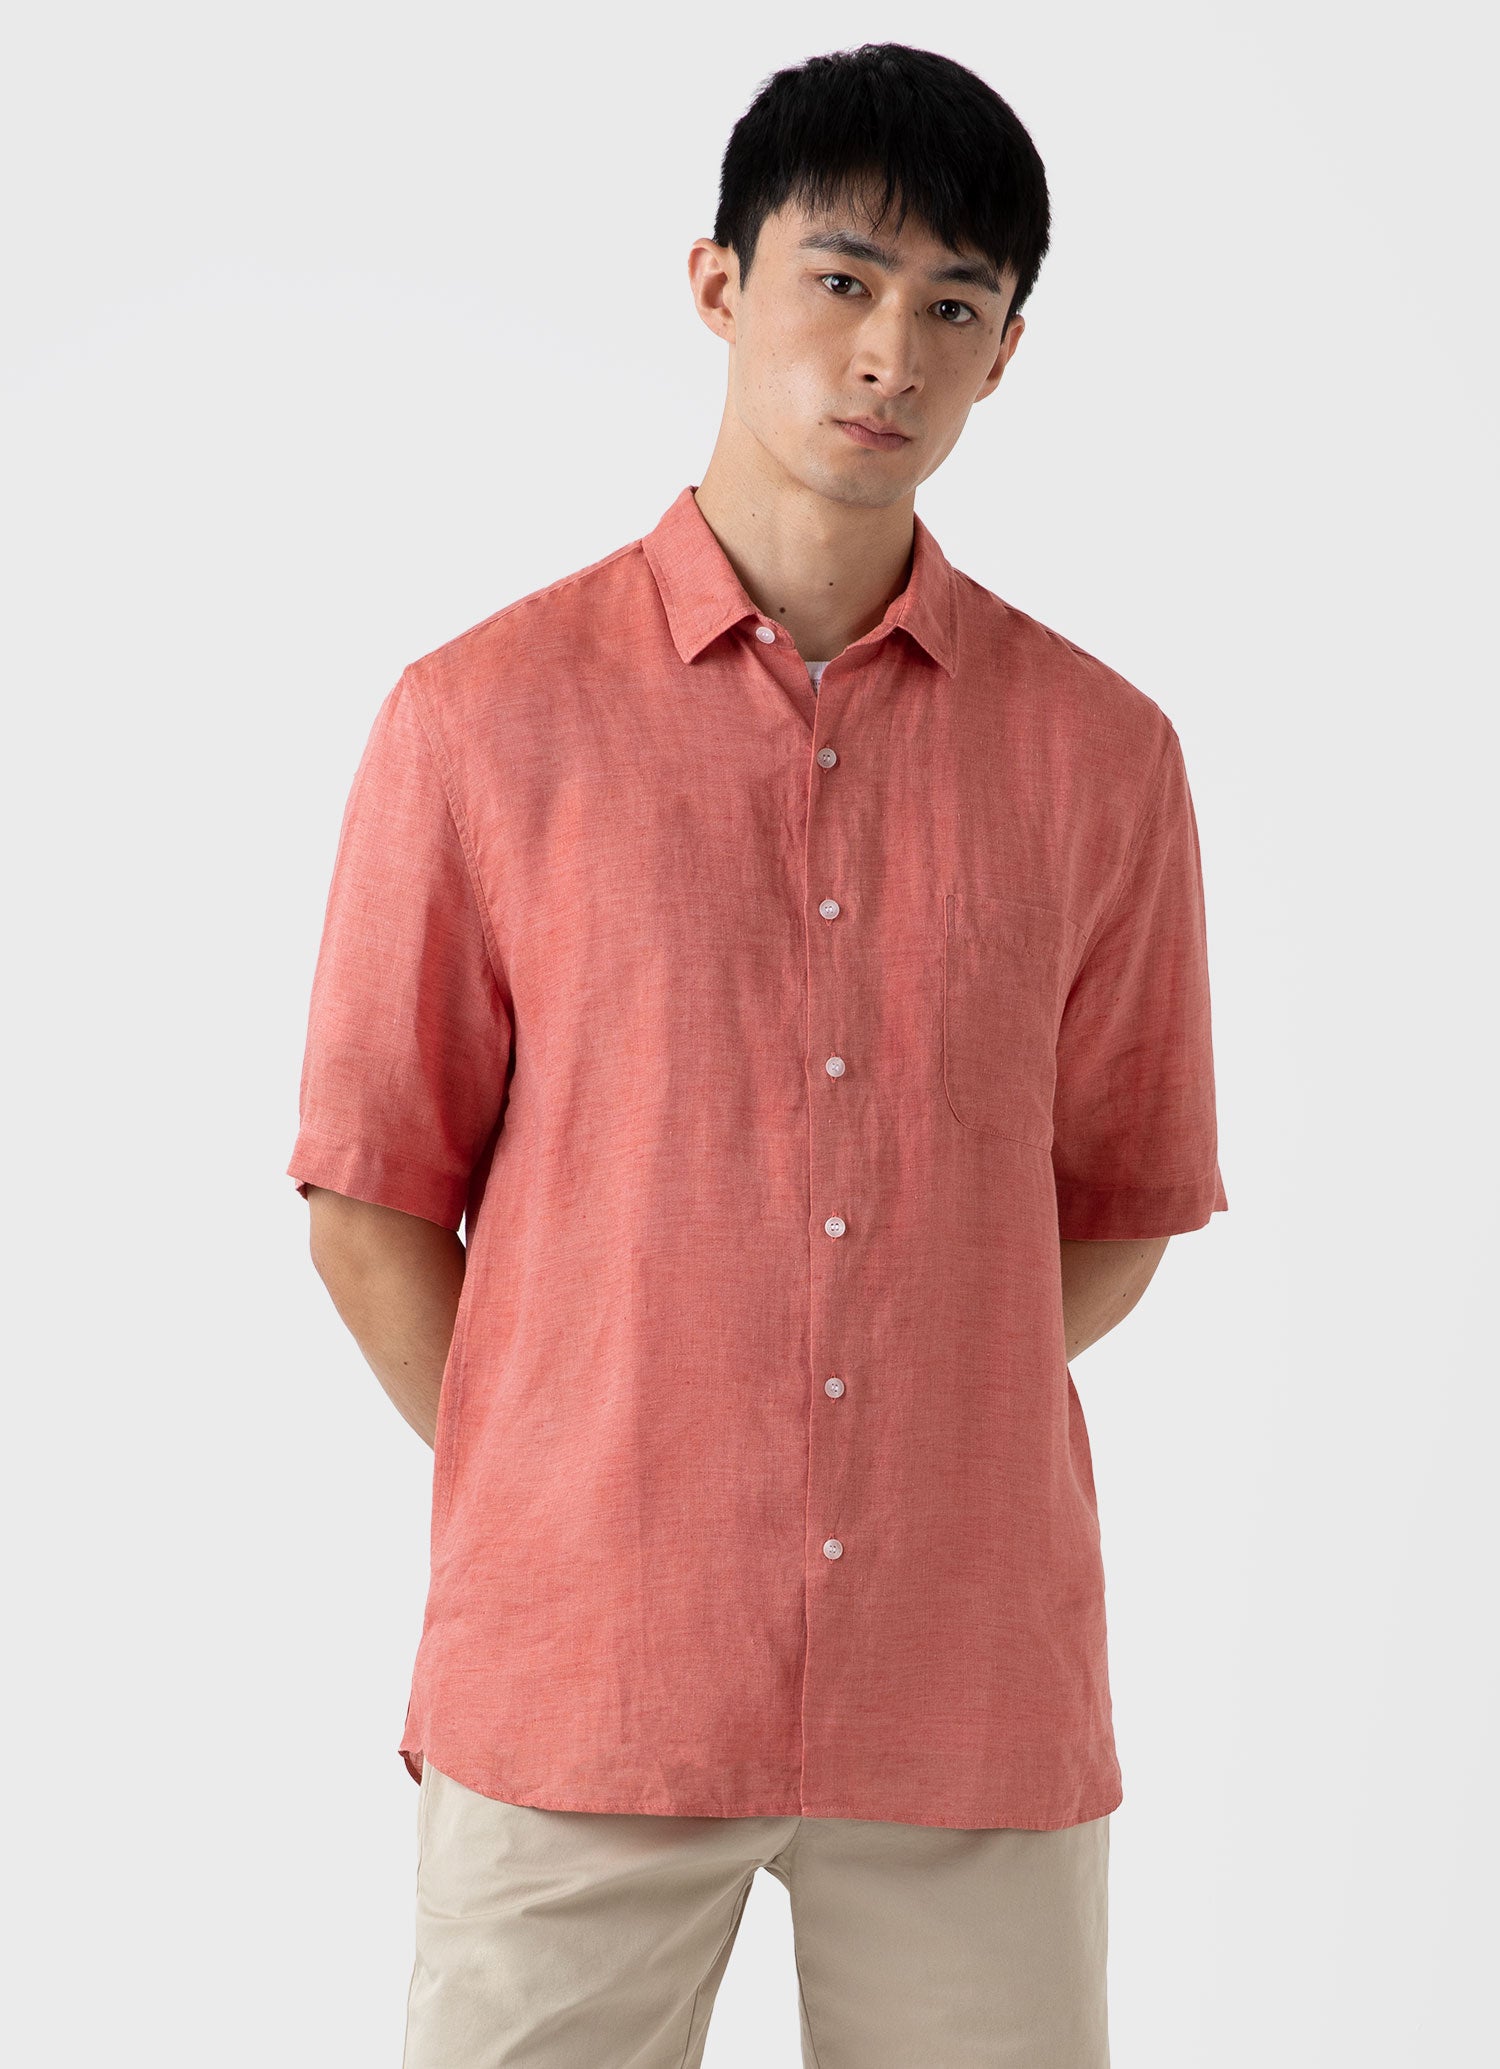 Men's Short Sleeve Linen Shirt in Burnt Sienna